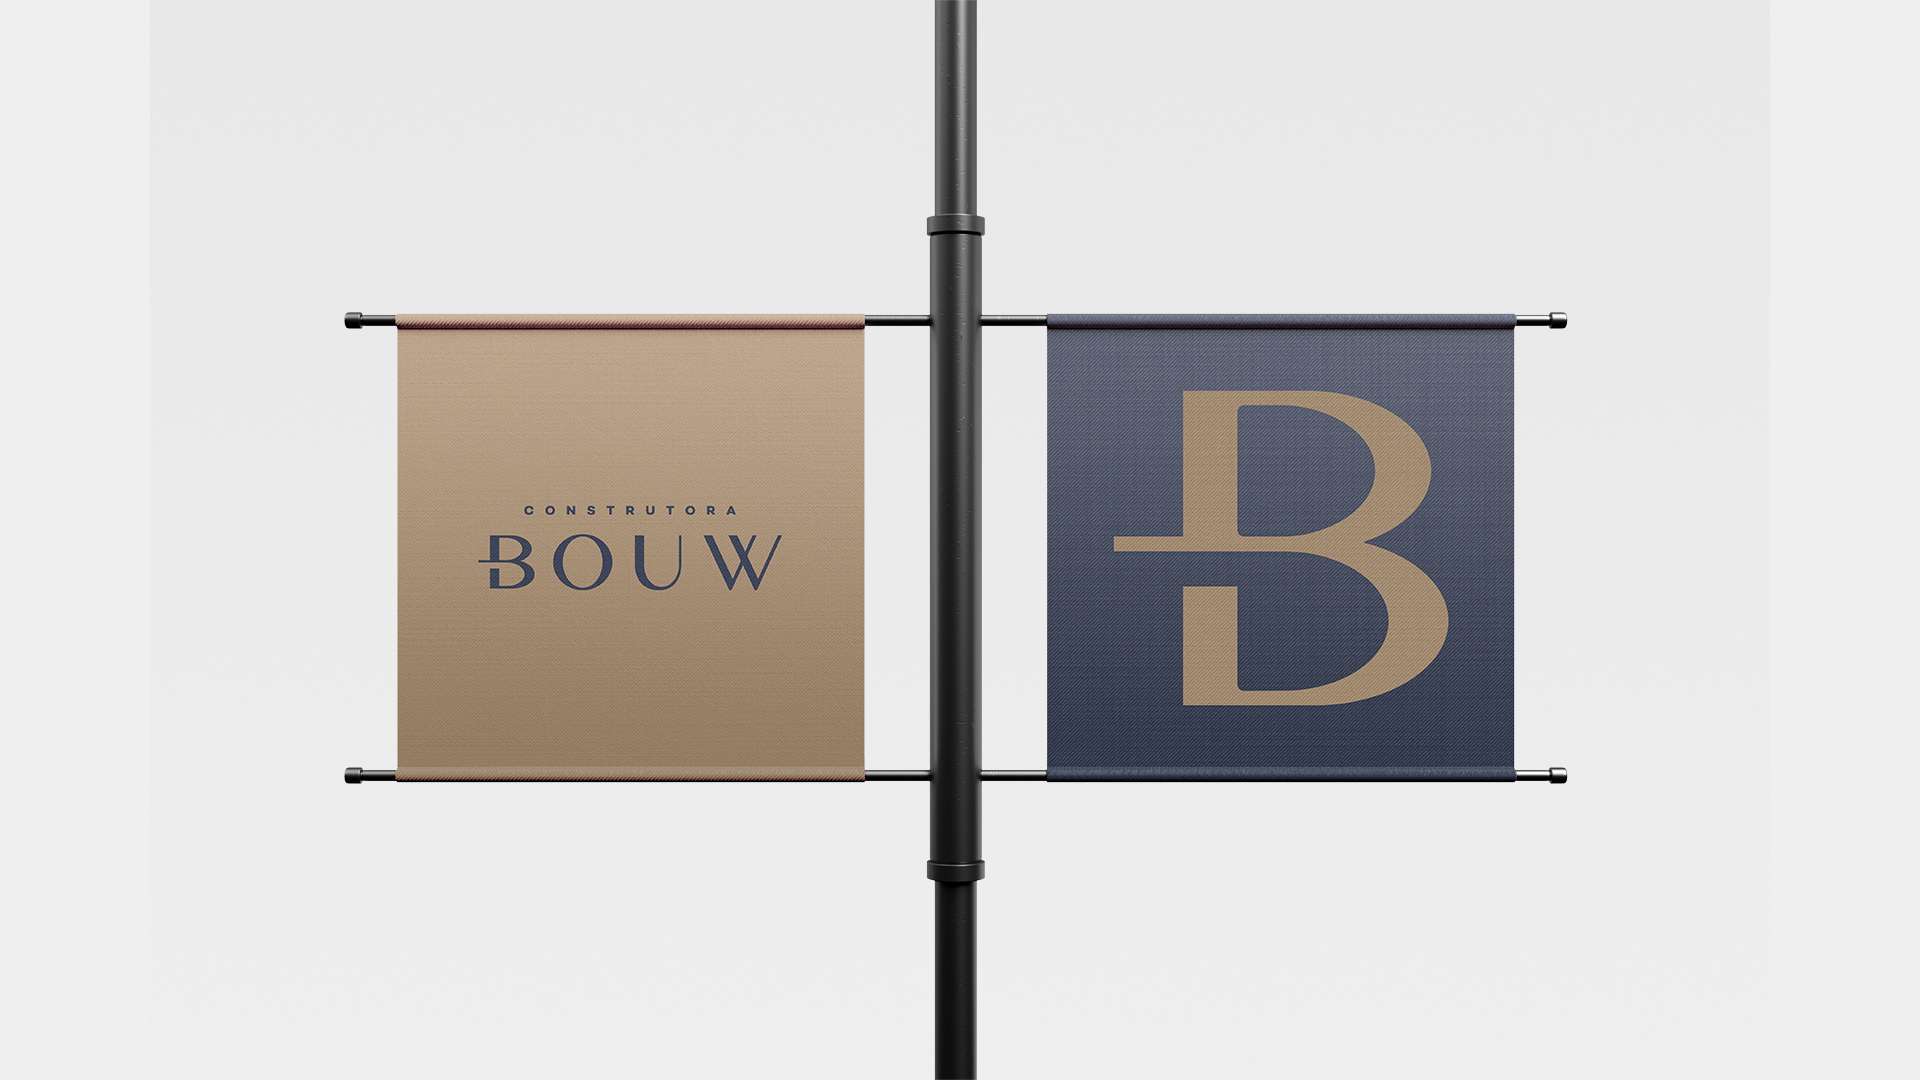 Reformulação de marca – Construtora Bouw